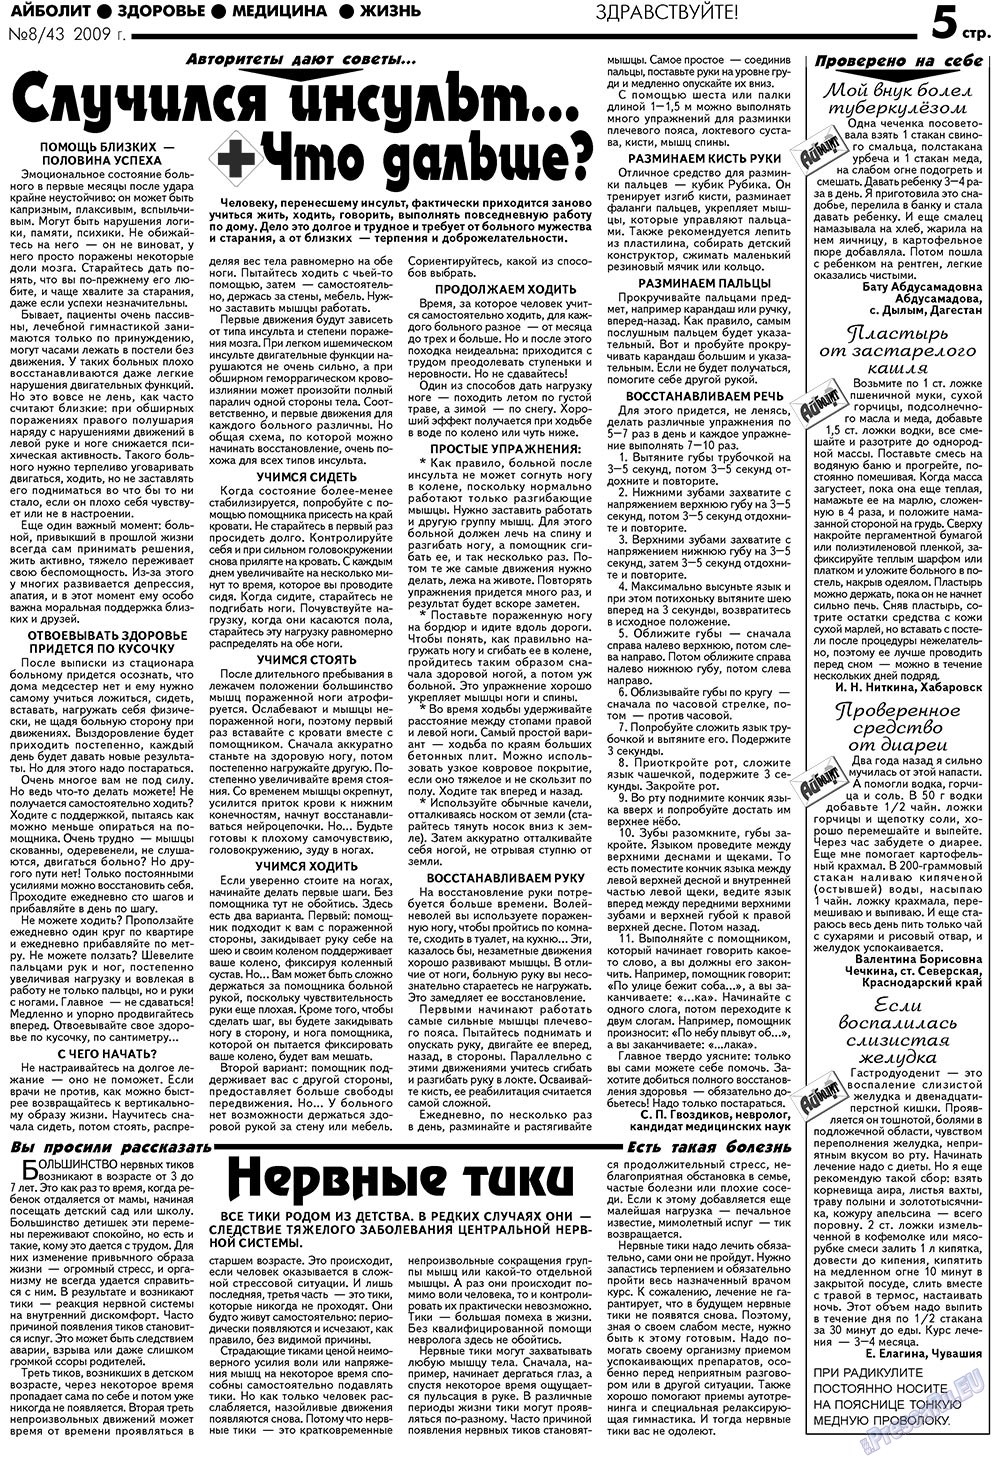 АйБолит, газета. 2009 №8 стр.5